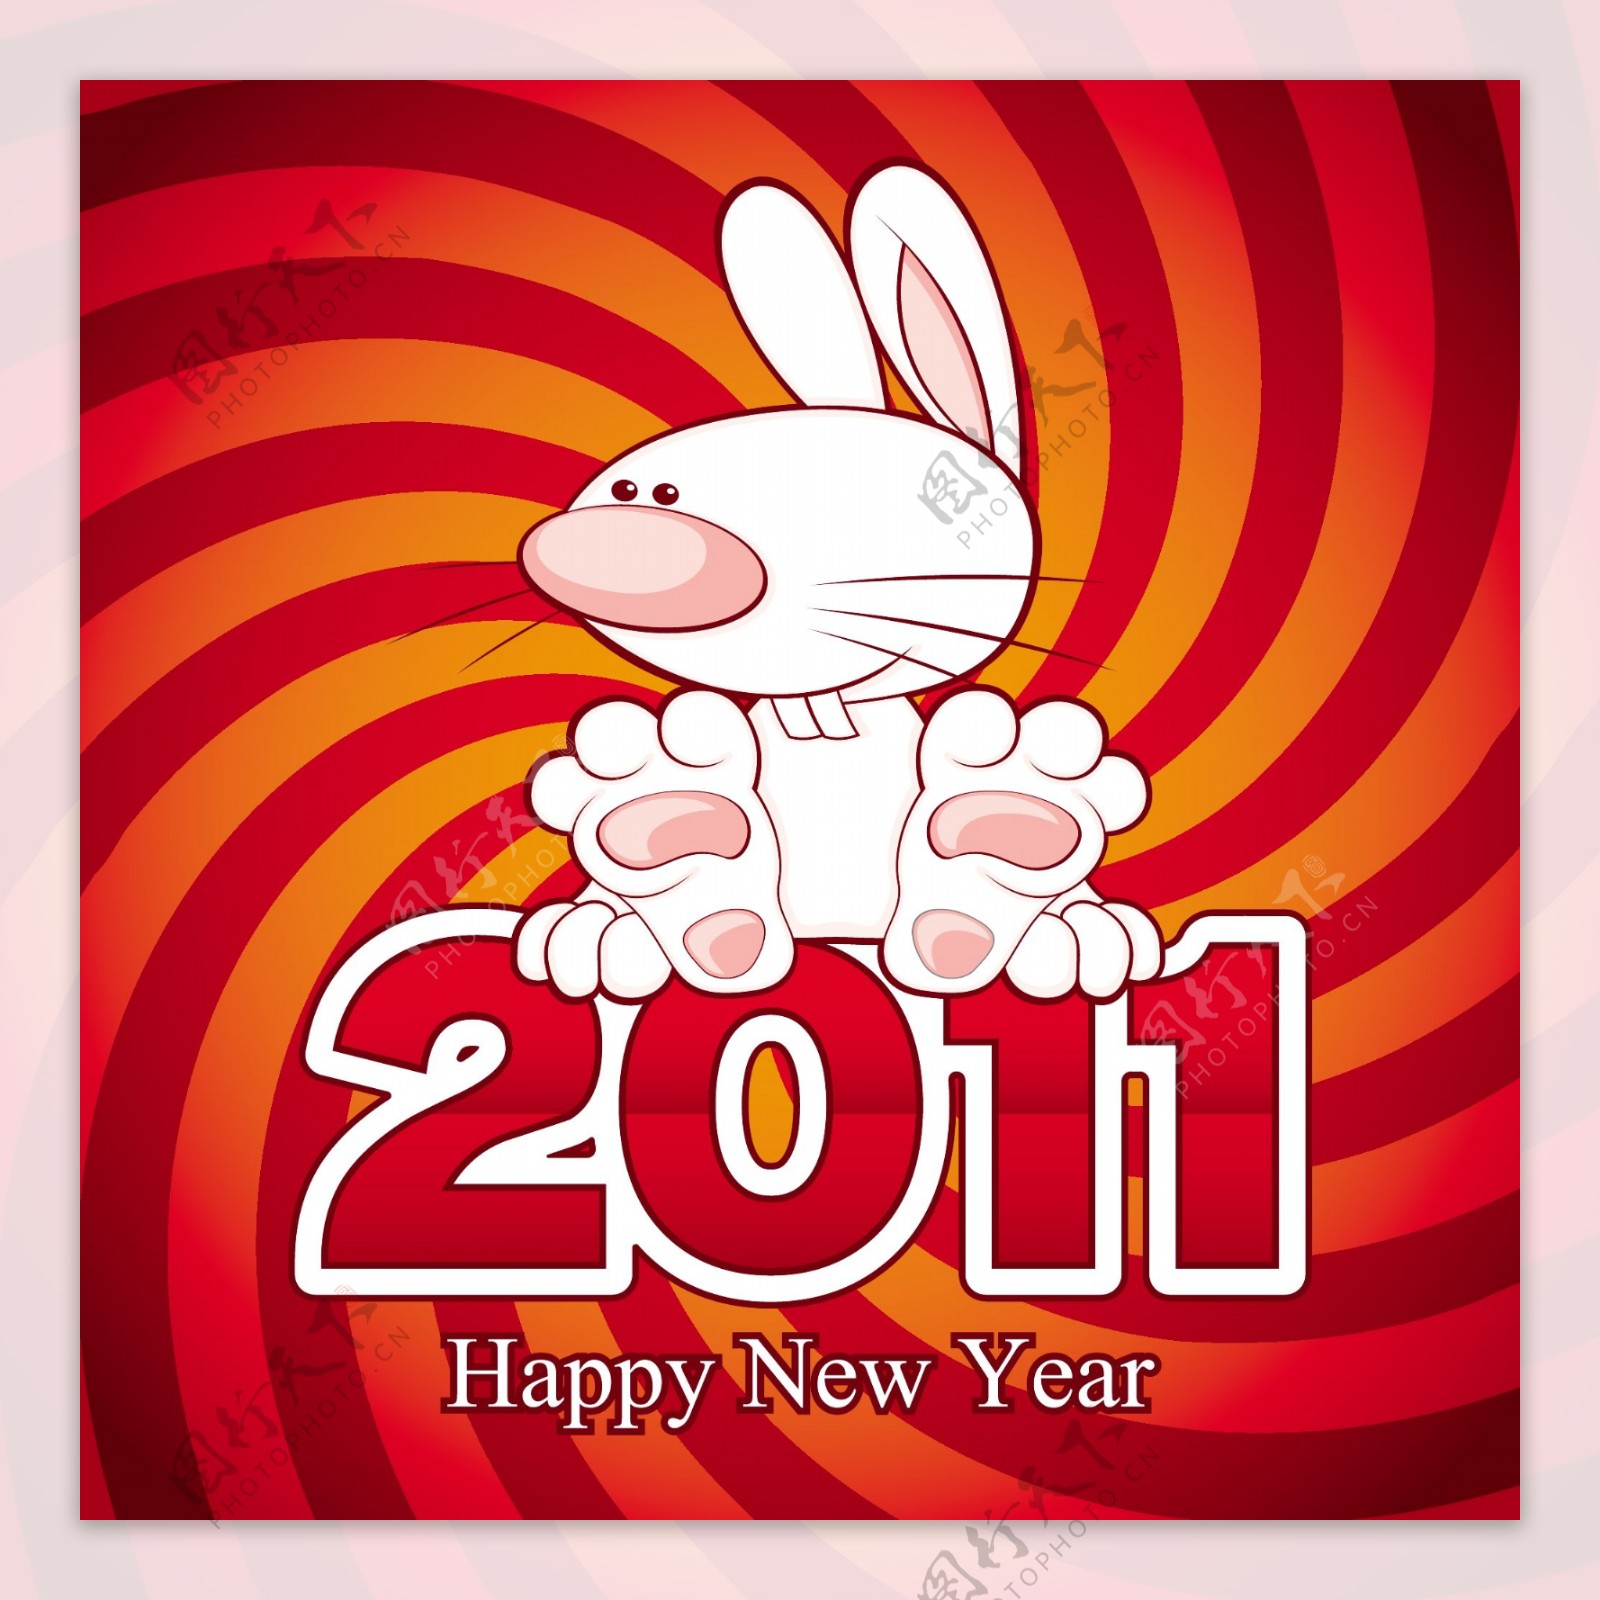 2011卡通兔子矢量素材